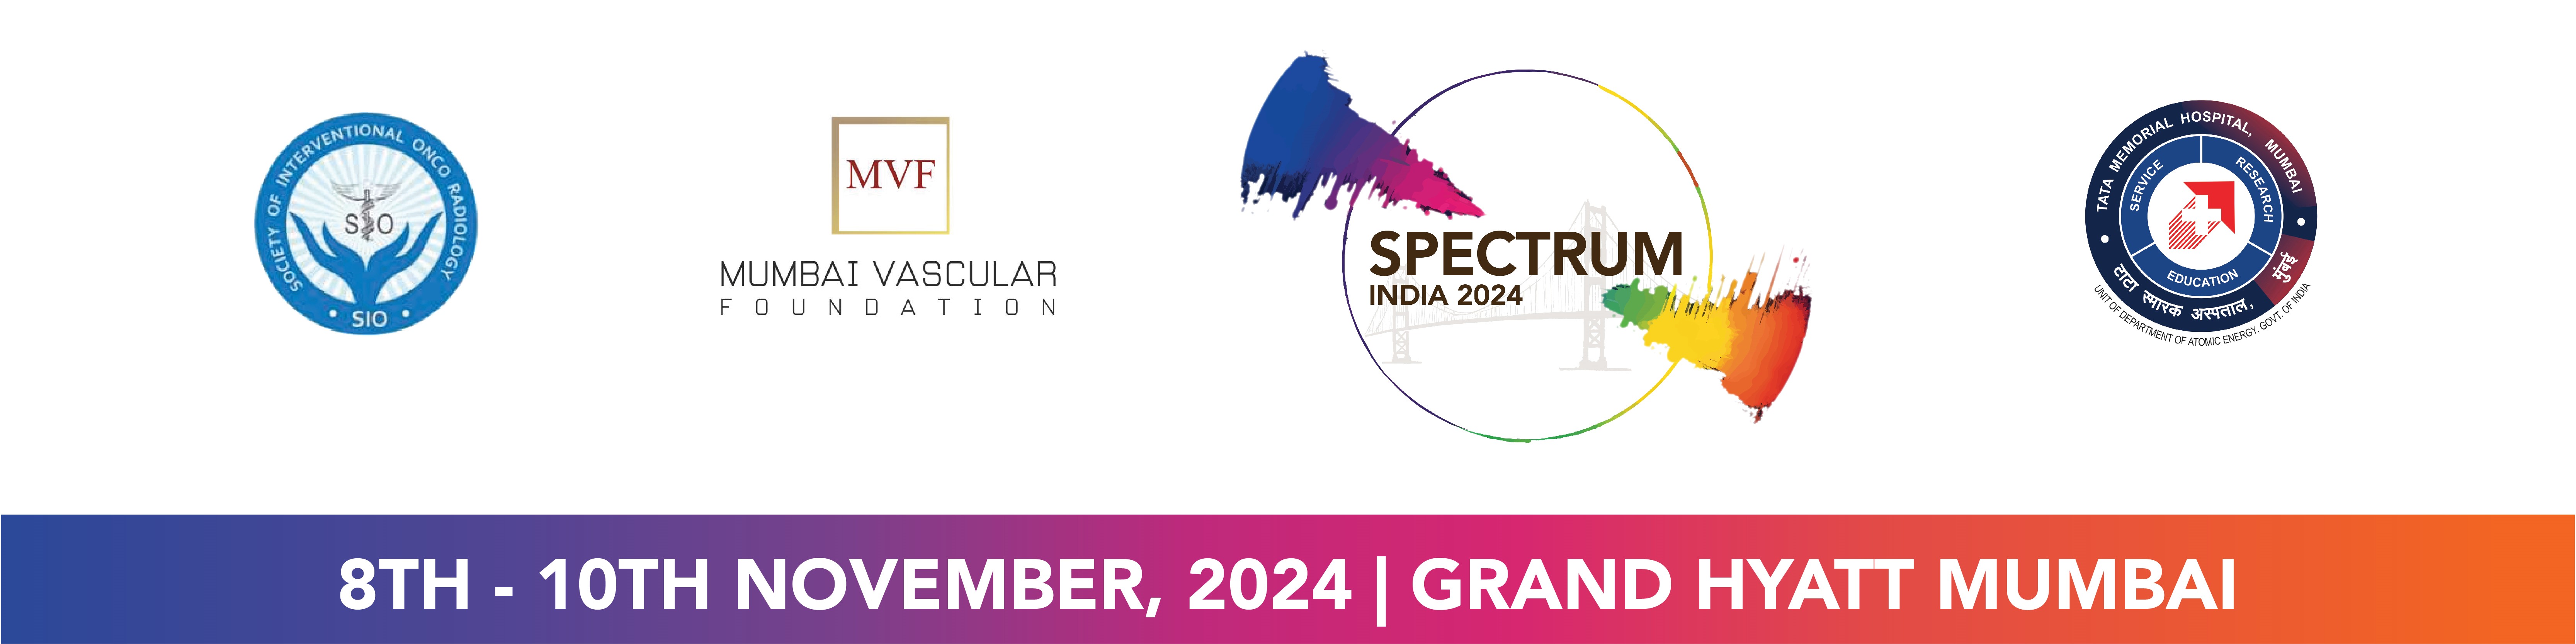 Spectrum India 2024